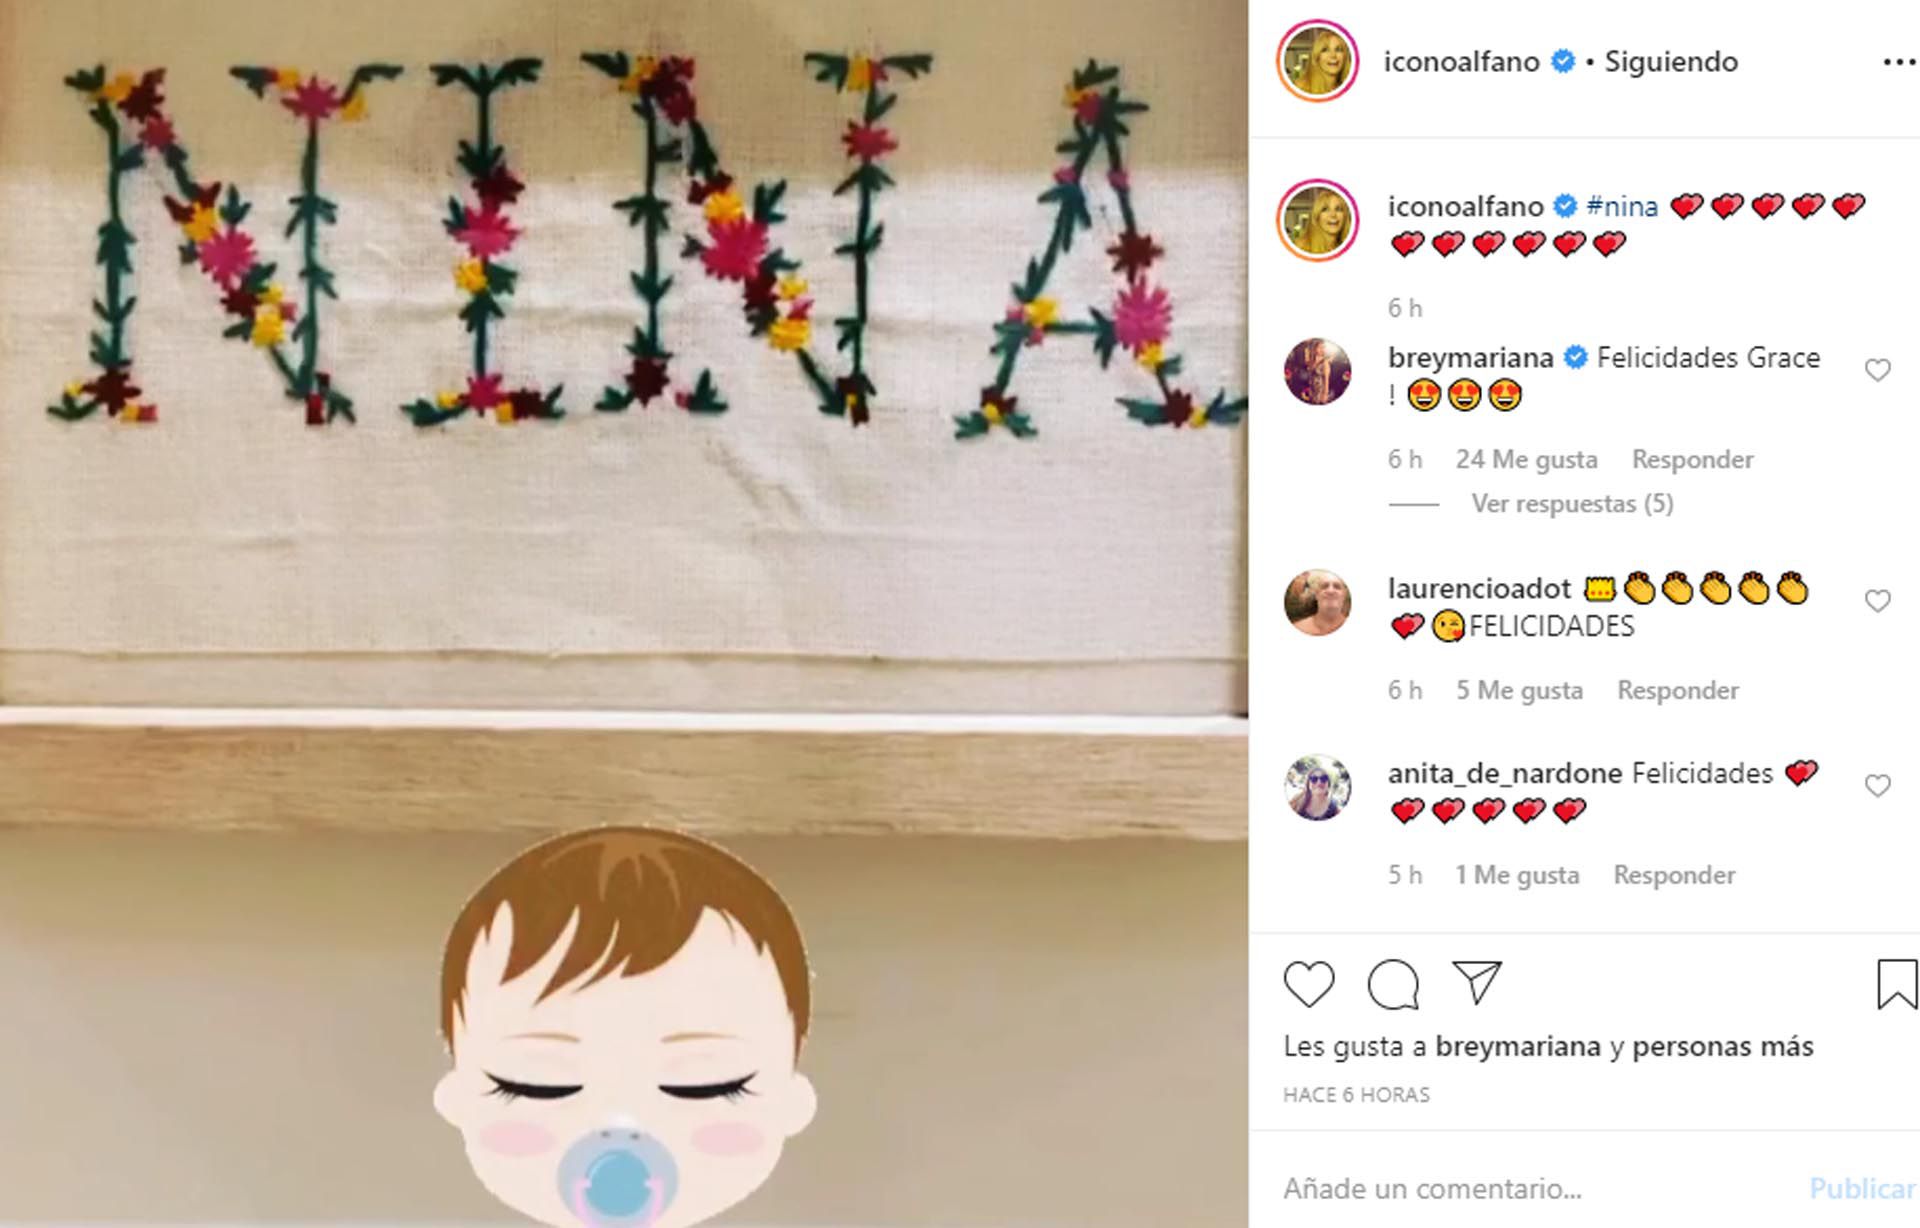 La palabra Nina y los emojis de corazones, todo un símbolo de lo que representa el nacimiento de su primera nieta para Graciela 